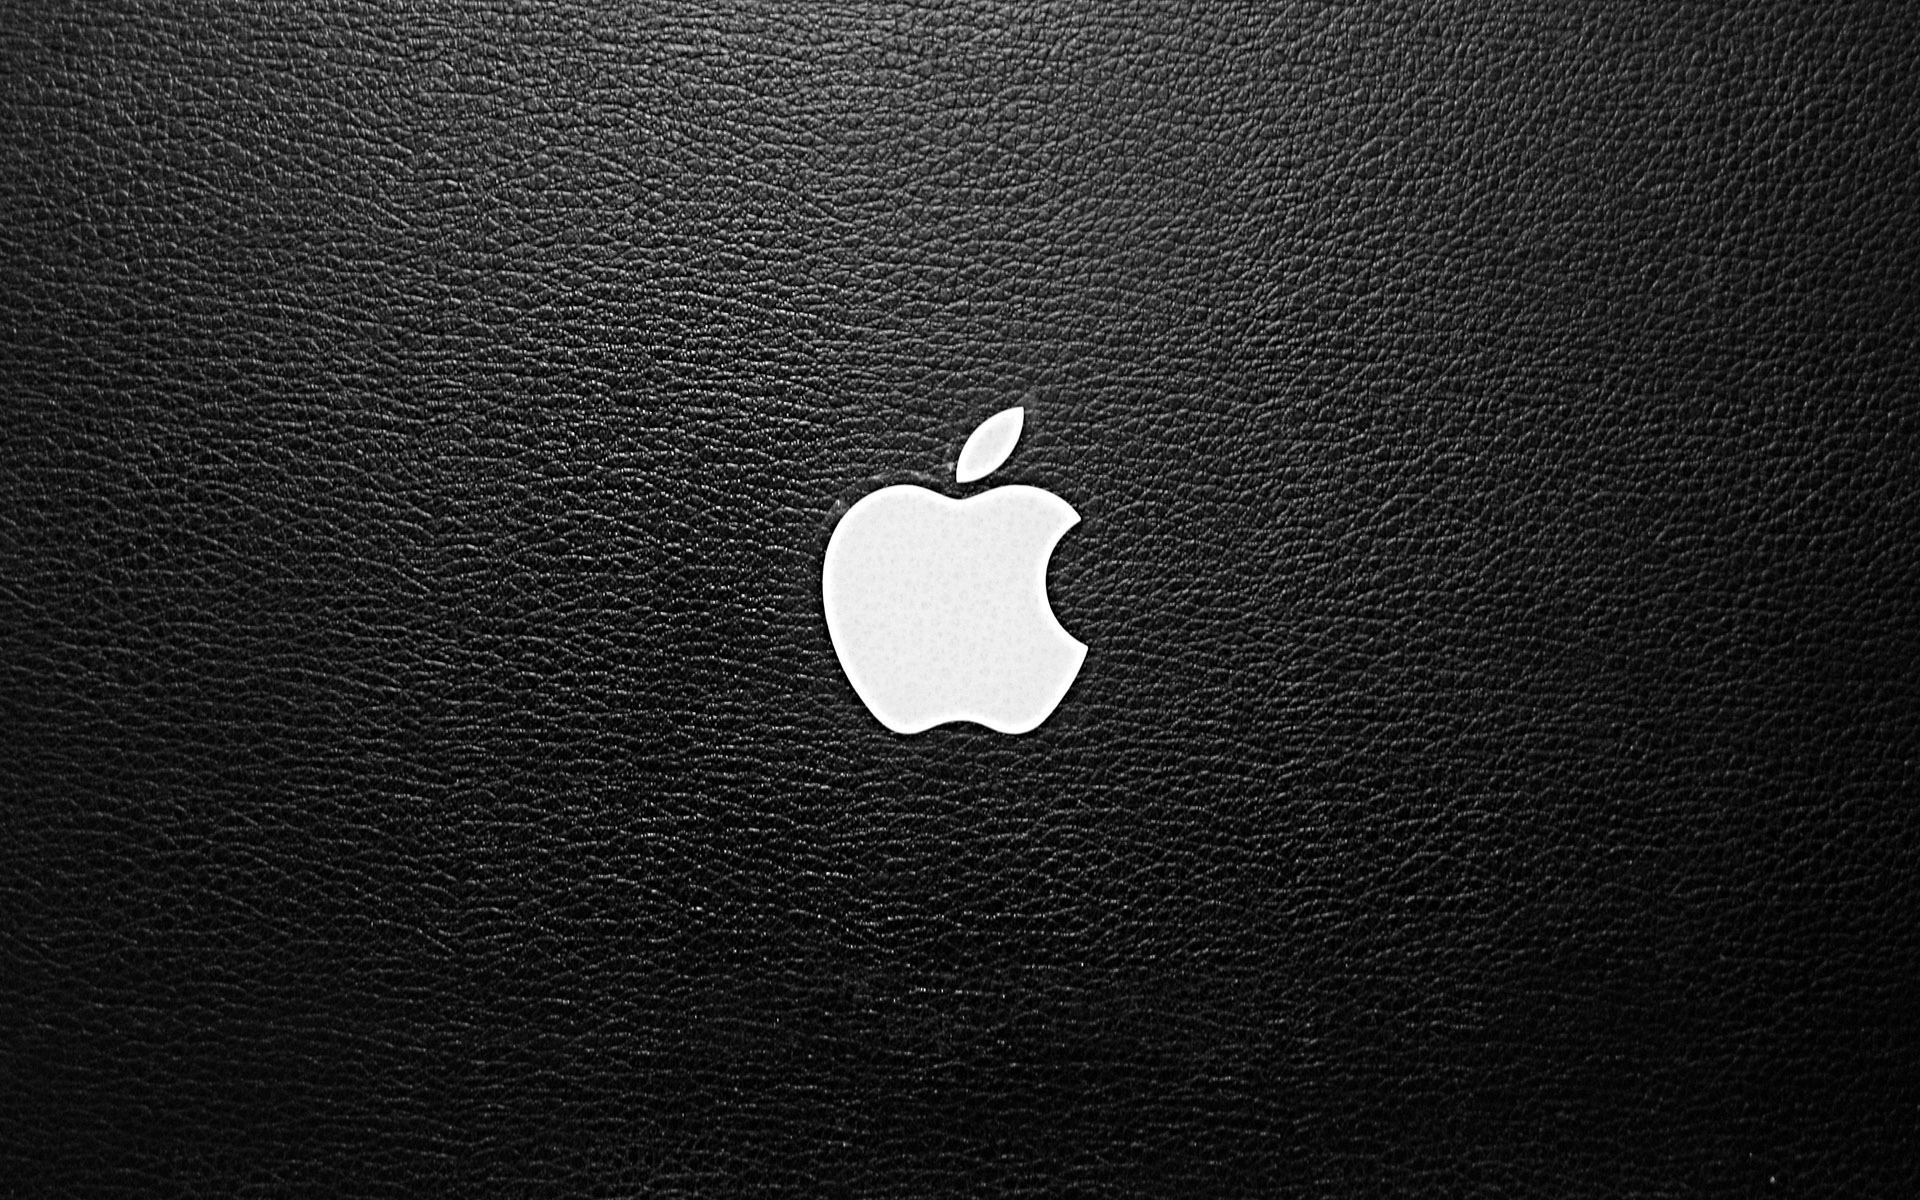 Logo Macbook Air luôn là biểu tượng của sự tinh tế và phong cách. Hãy dùng hình nền logo này để thể hiện gu thẩm mĩ của bạn trên màn hình máy tính.